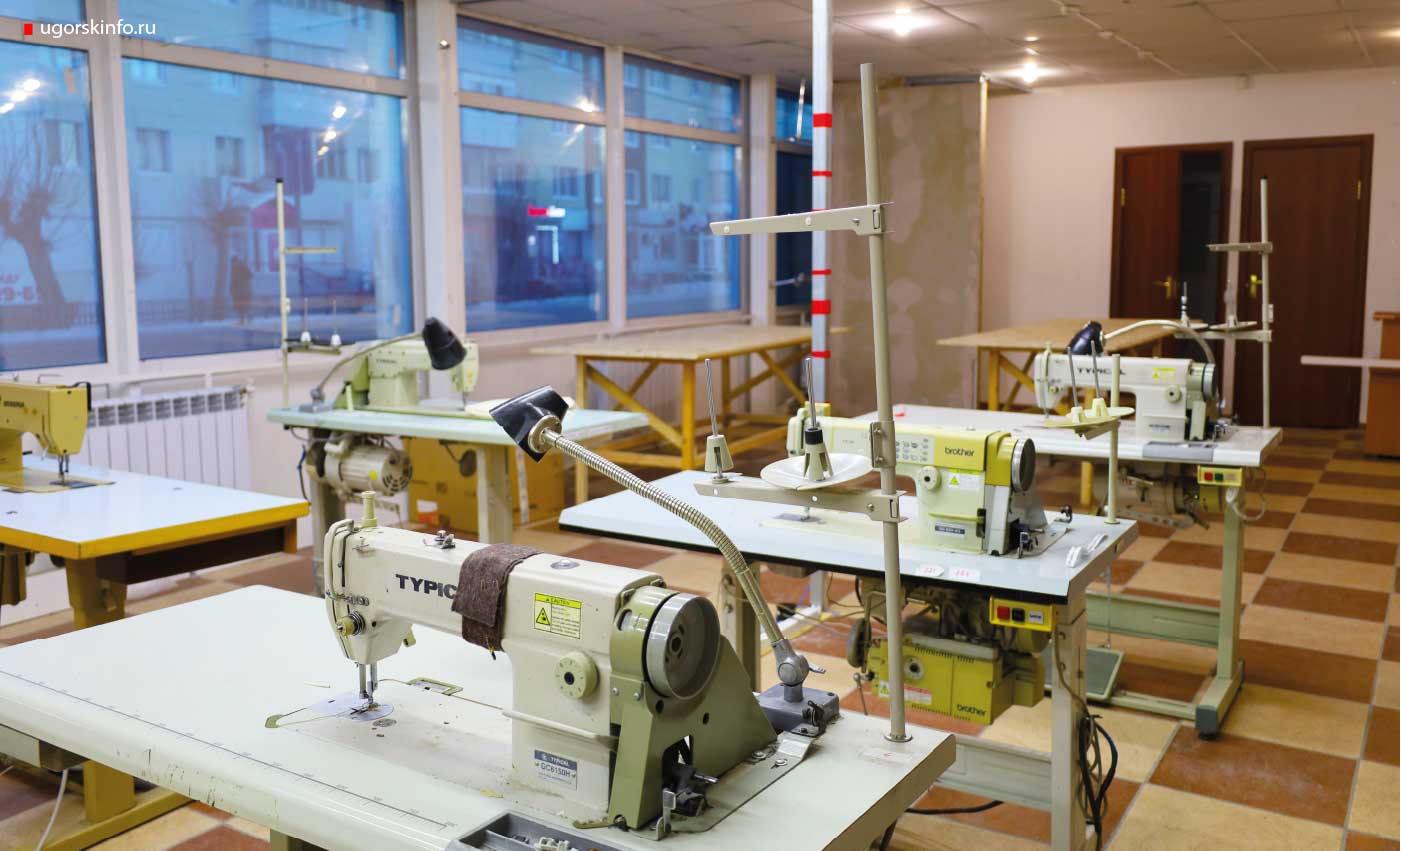 Администрация города передала в пользование мастерской 25 единиц швейной техники. 